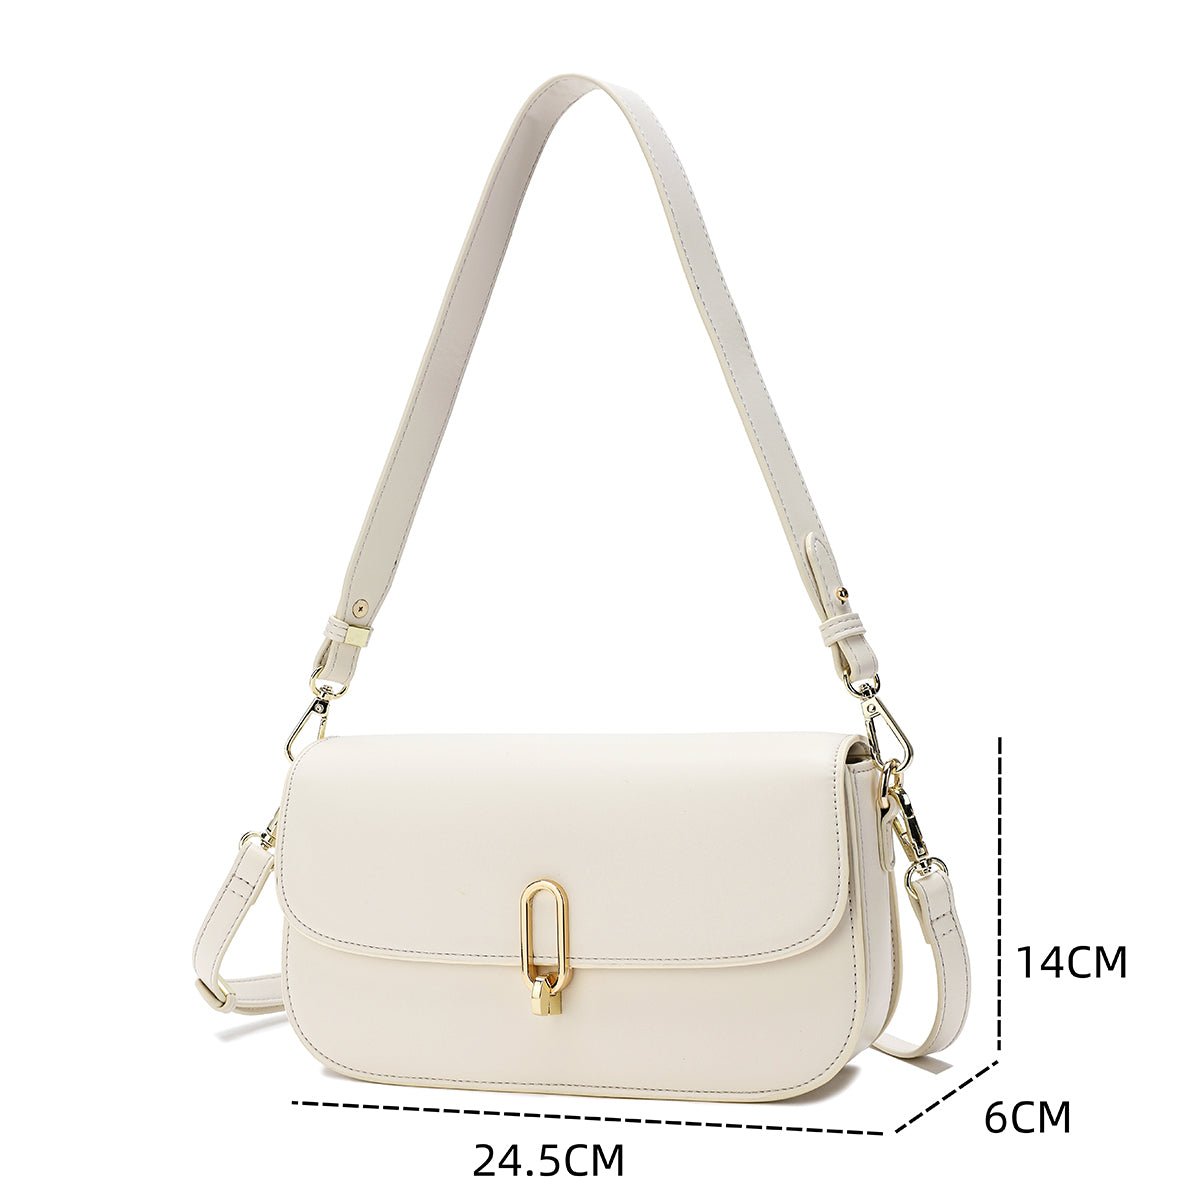 Attractive and practical handbag in cream color, 24 cm wide